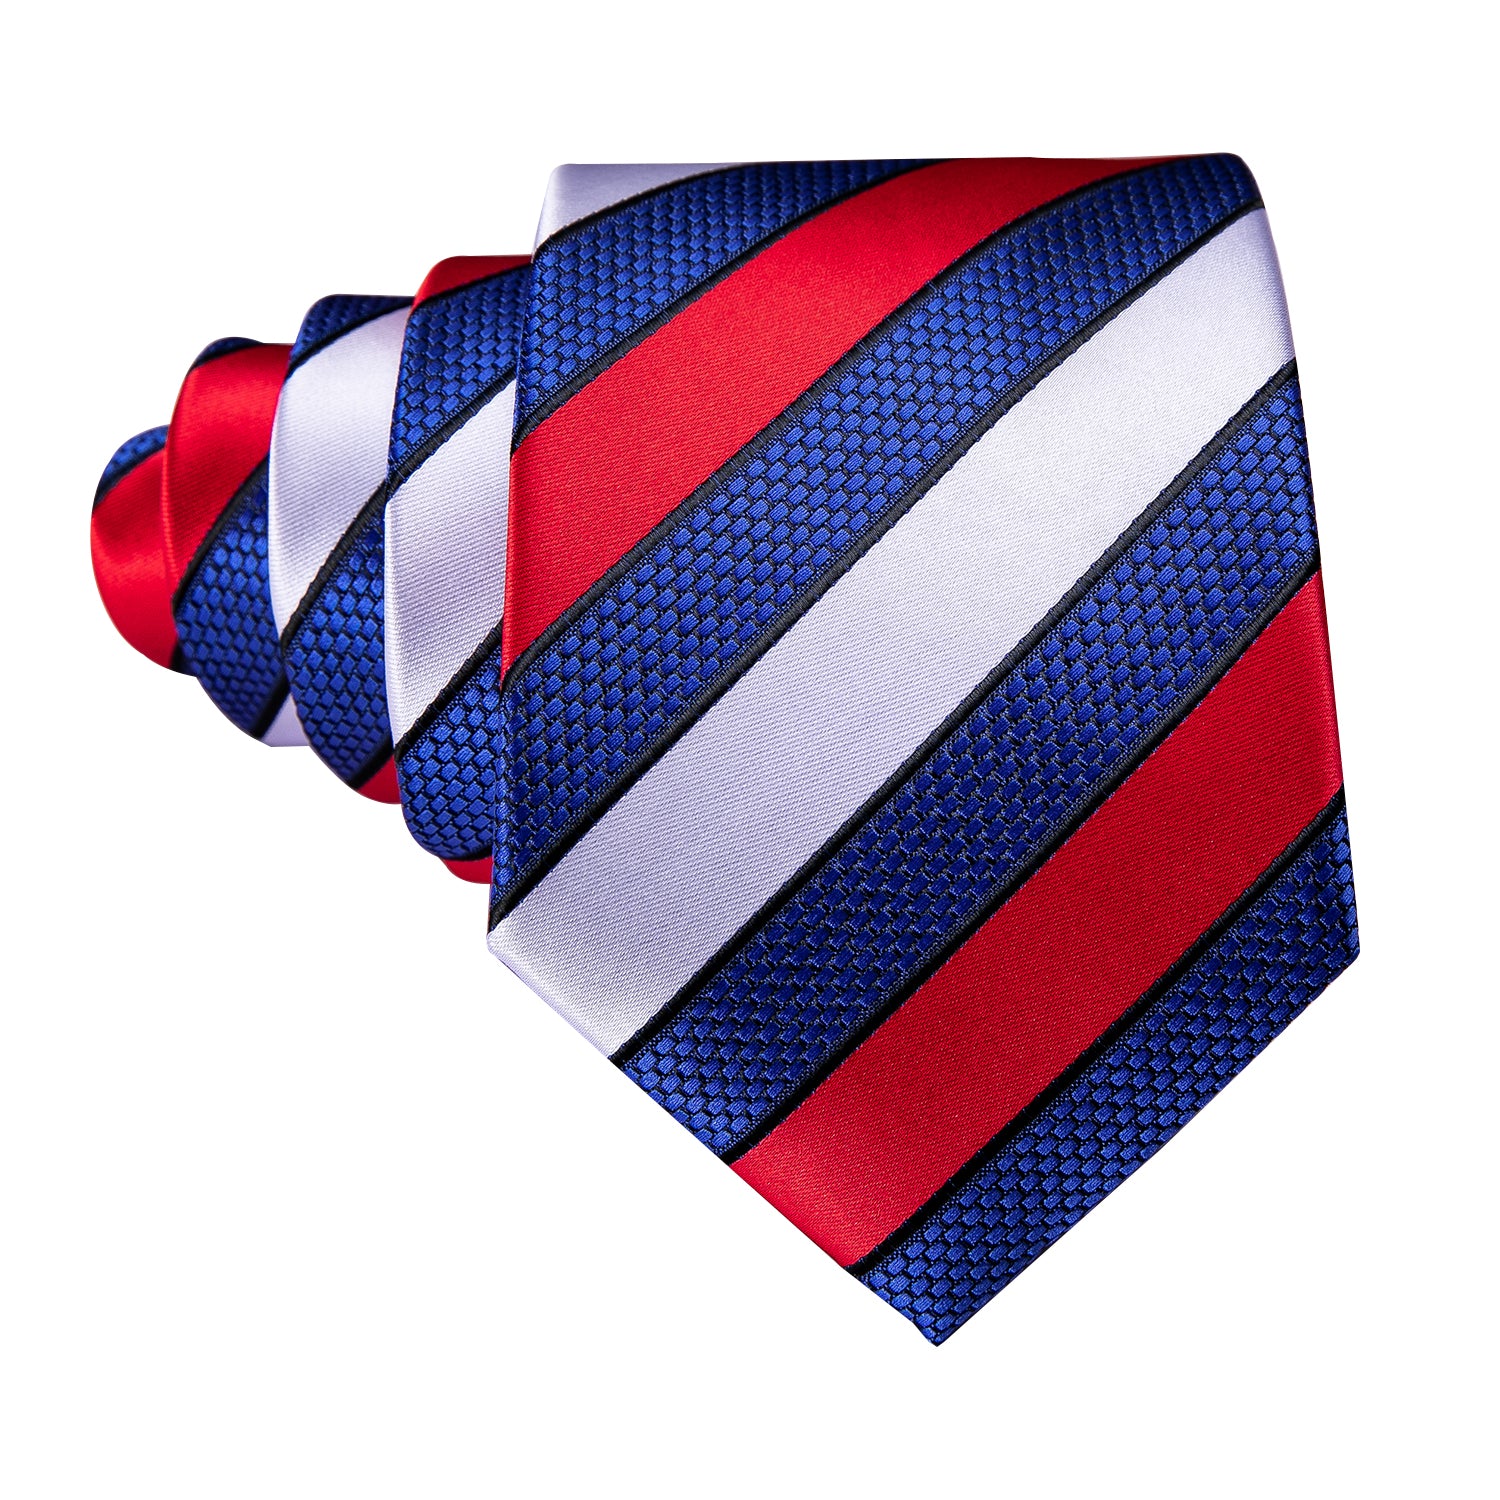 Barry.wang Men's Tie Red White Blue Striped Silk Tie Hanky Cufflinks Set